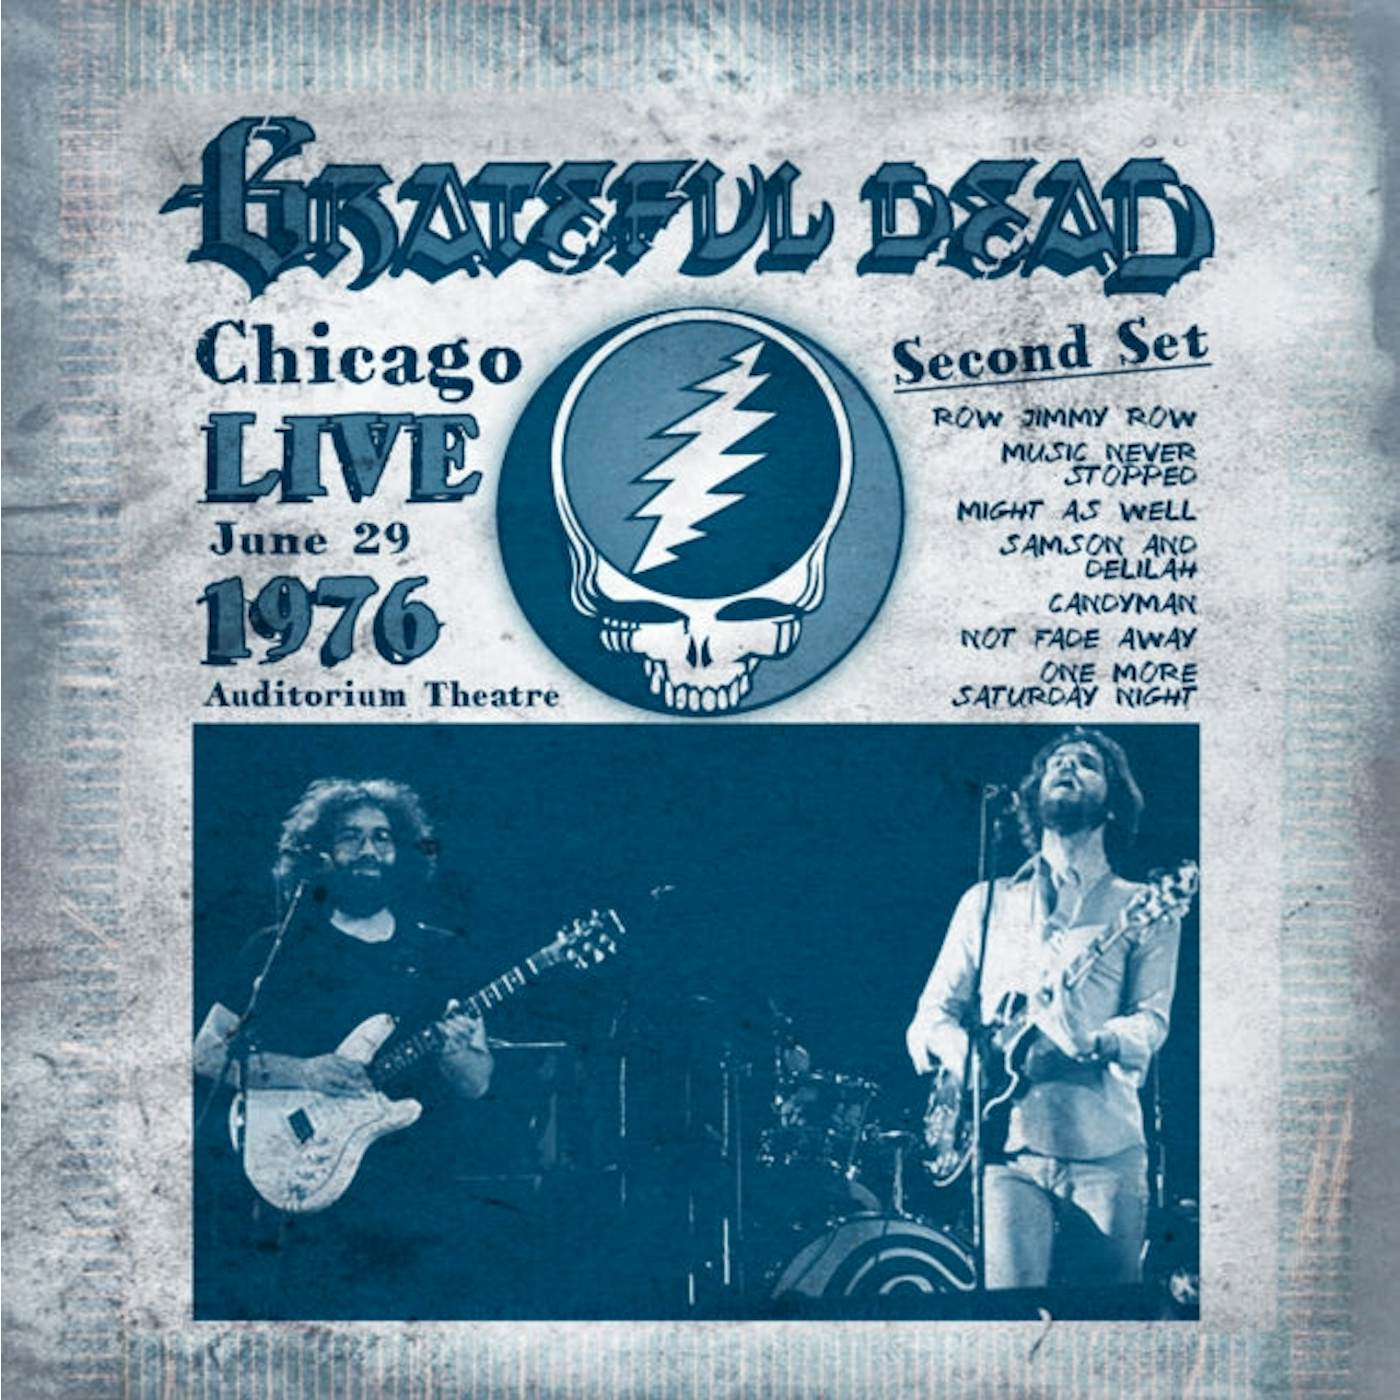 Grateful Dead LP Vinyl Record - Live At Auditorium Theatre In Chicago June 29 19 76 - Second Set